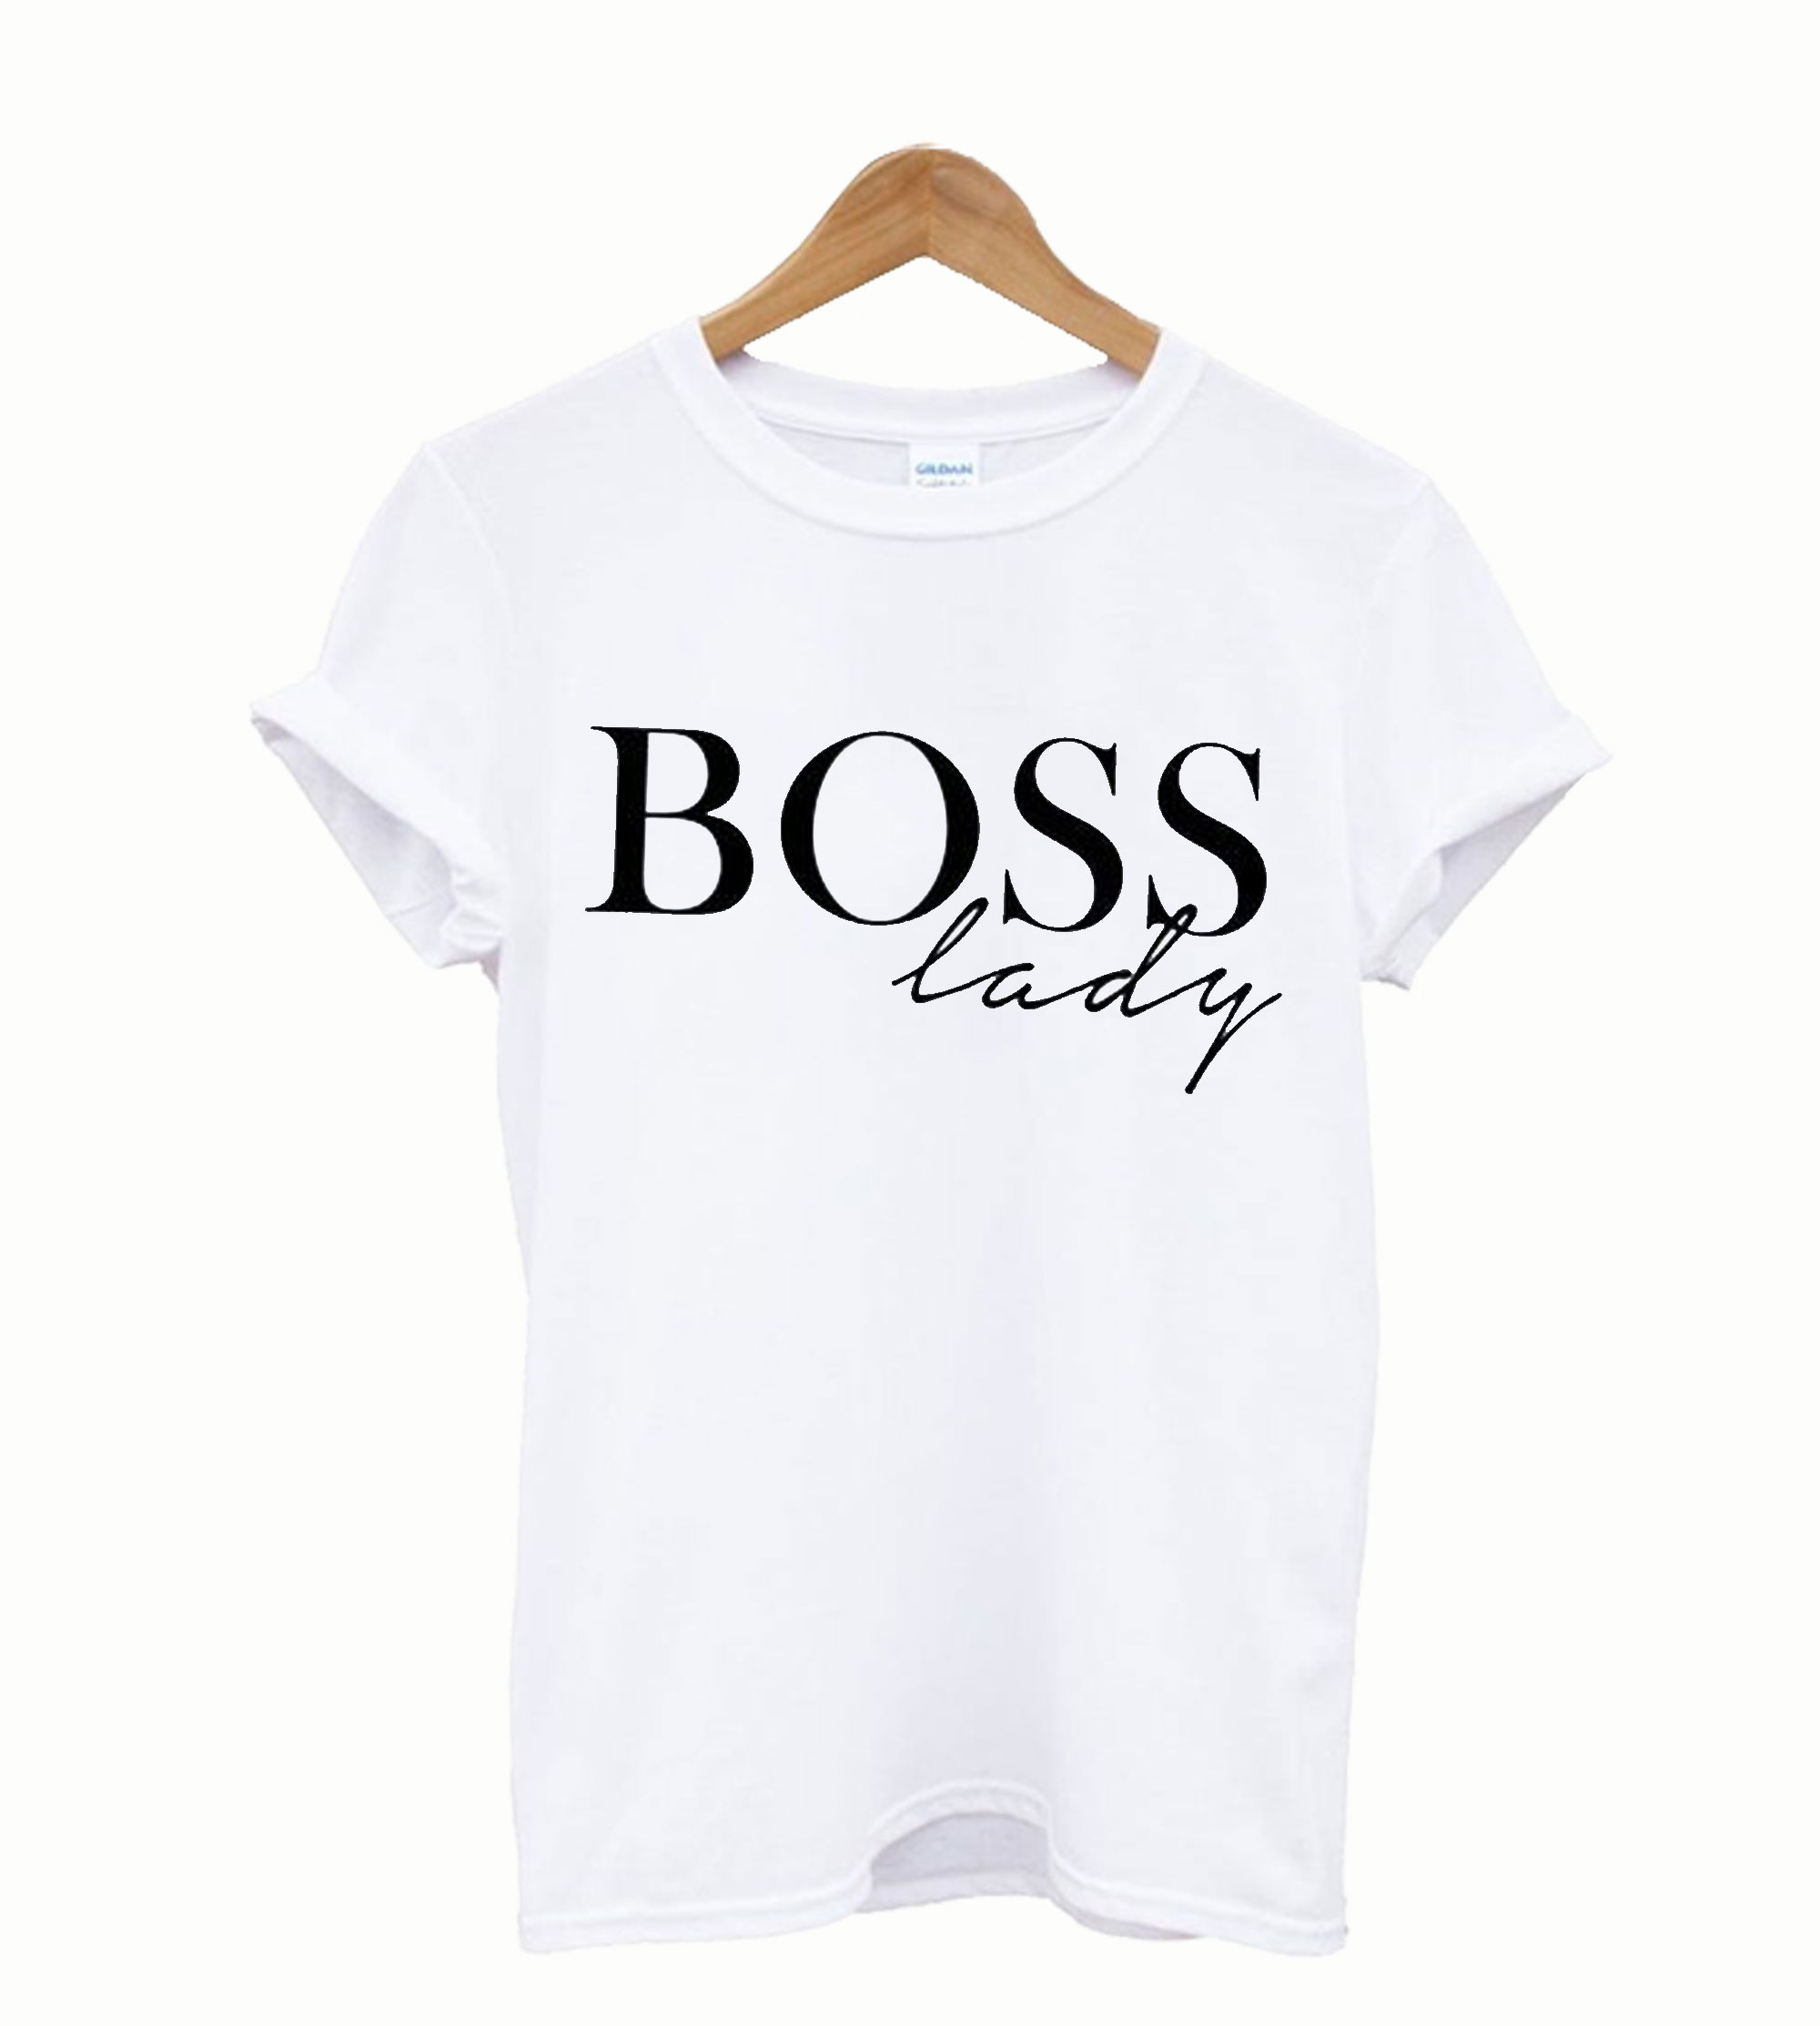 boss lady tee shirts